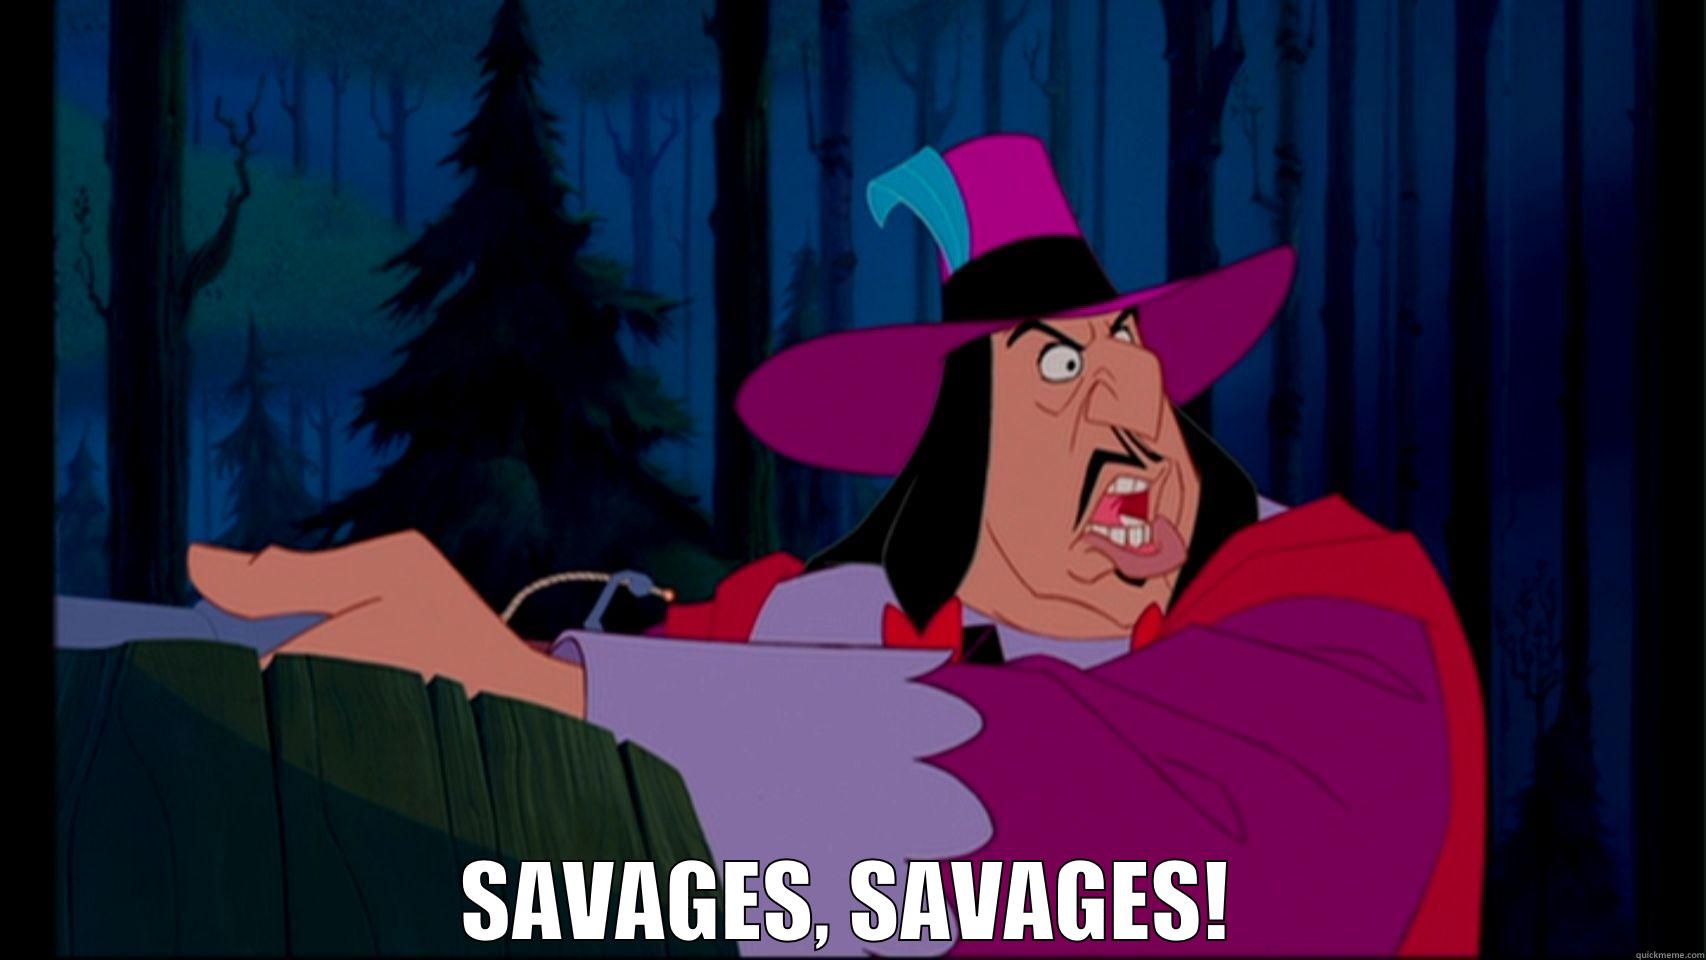 Savages, savages! -  SAVAGES, SAVAGES! Misc